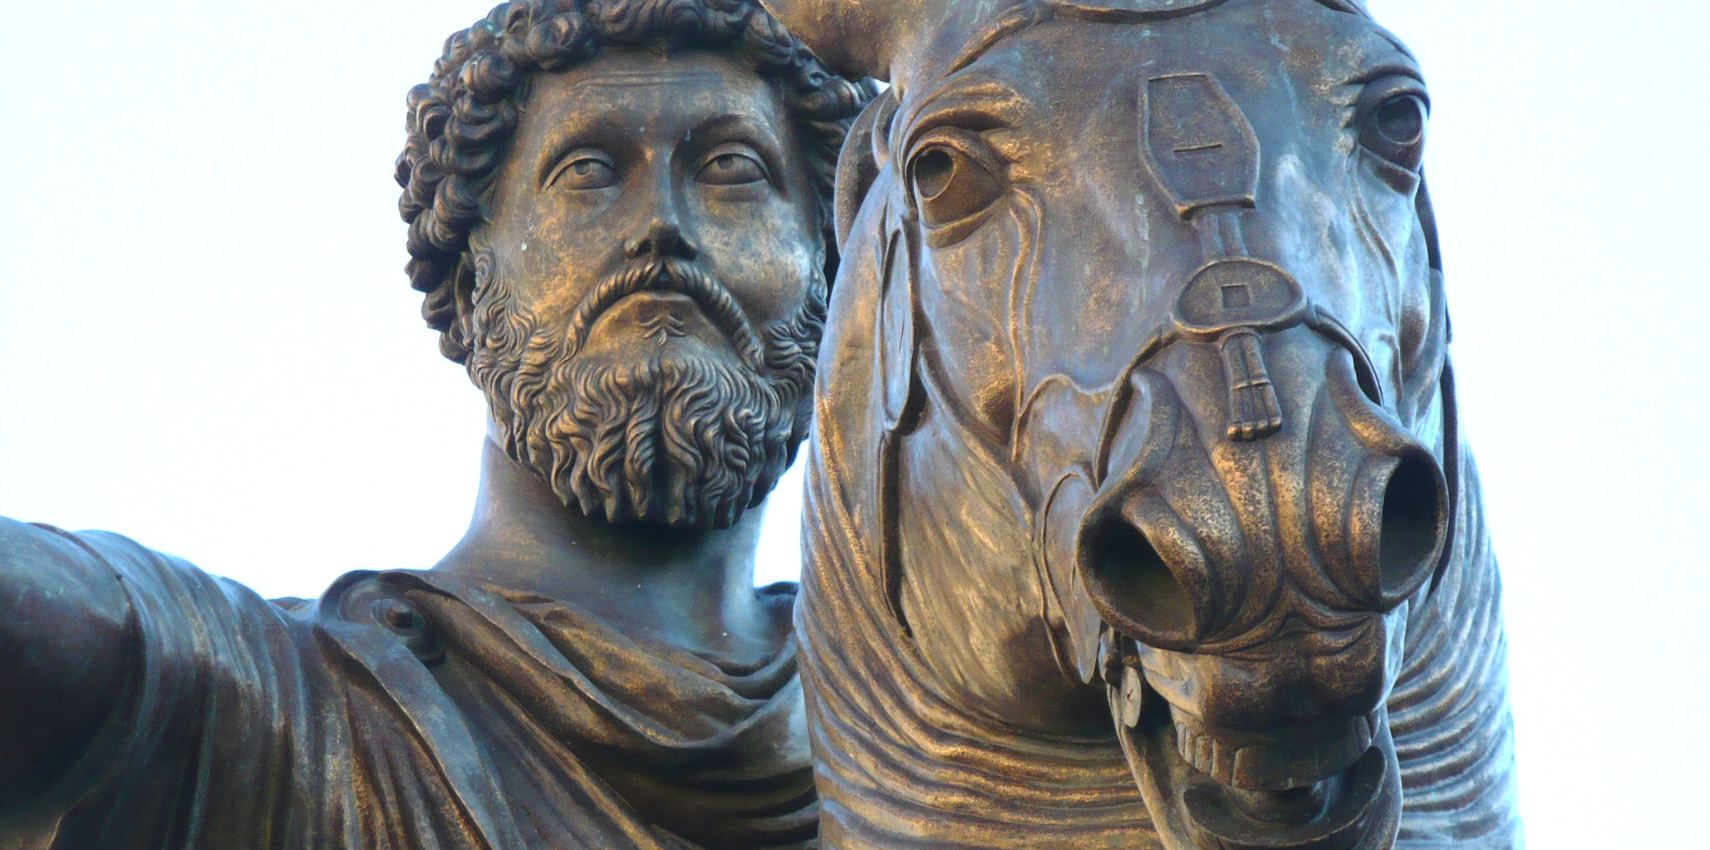 Cosa pensava Marco Aurelio della felicità? - Quora